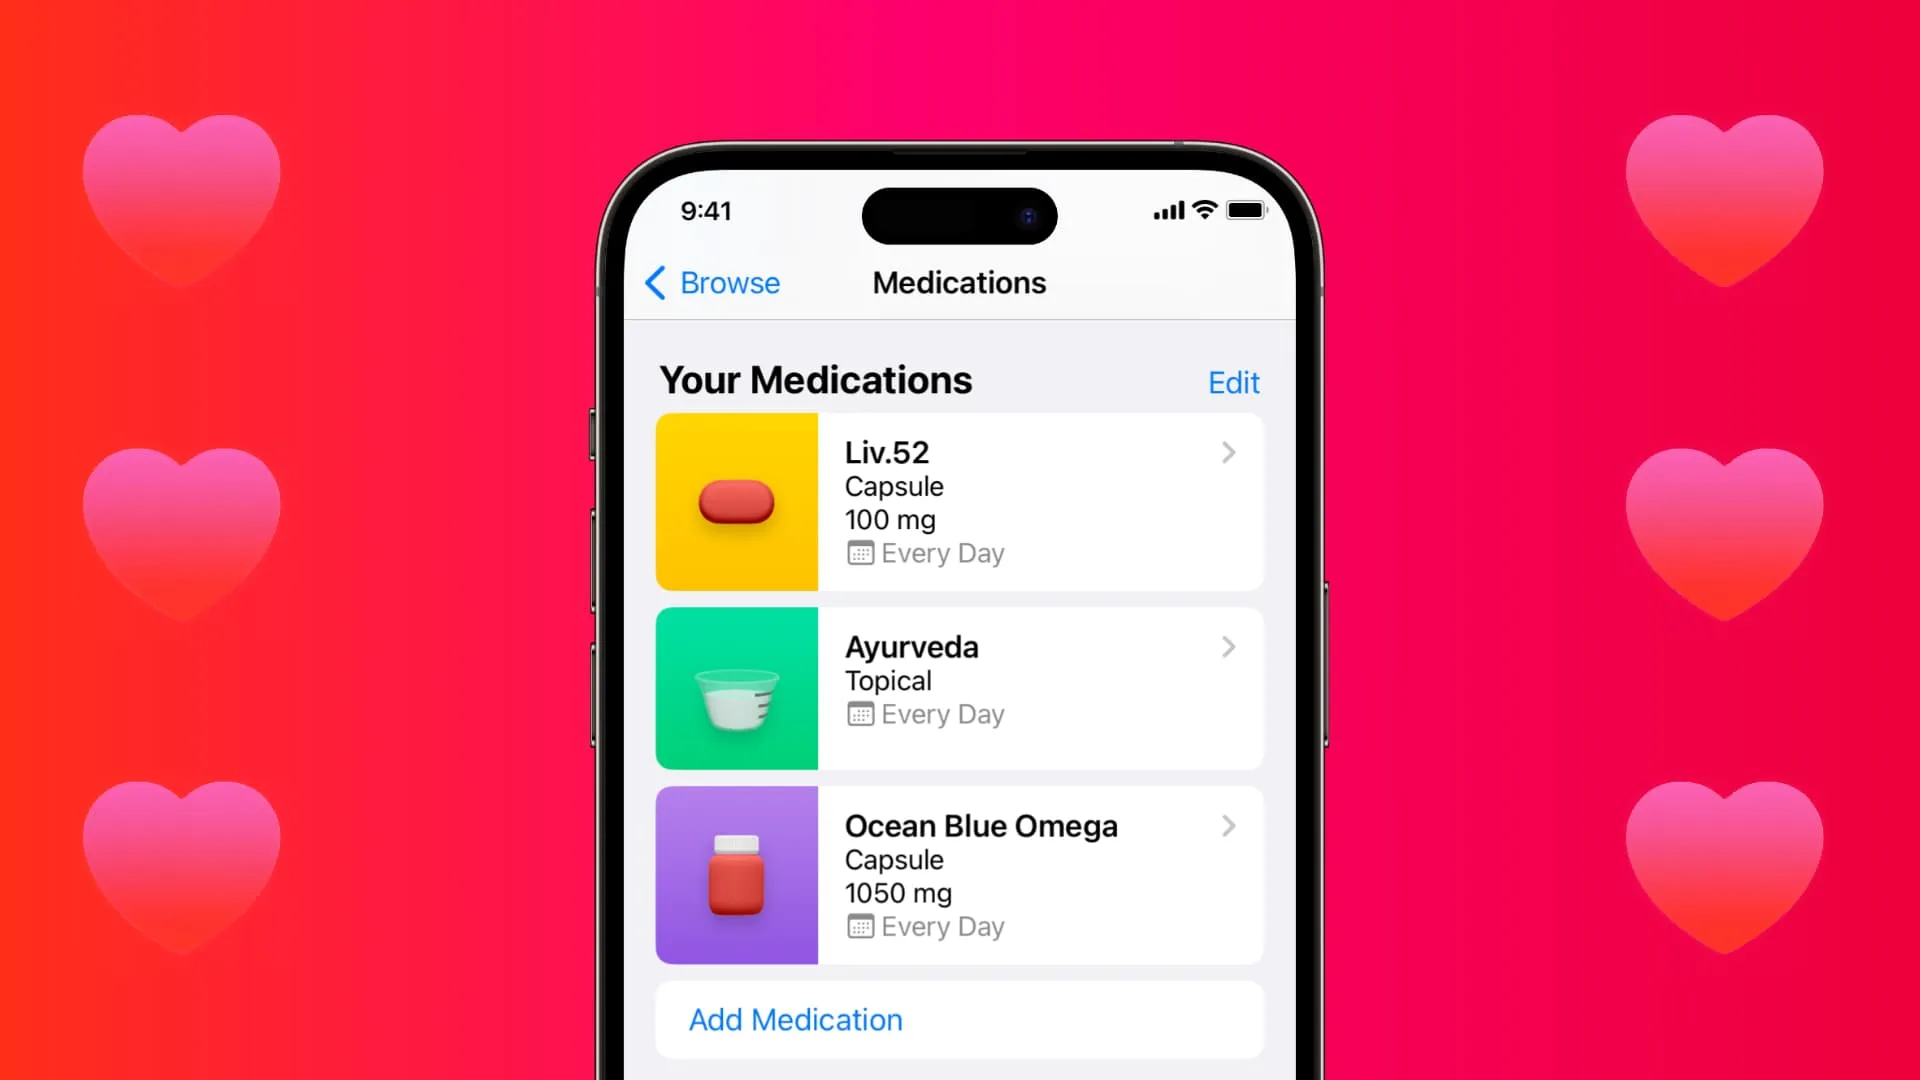 Bildkomposition, die die iPhone-Gesundheits-App mit drei hinzugefügten Medikamenten zeigt.  Sechs rote Herzen auf einem rosa-roten einfarbigen Hintergrund kennzeichnen die iOS 16 Health-App